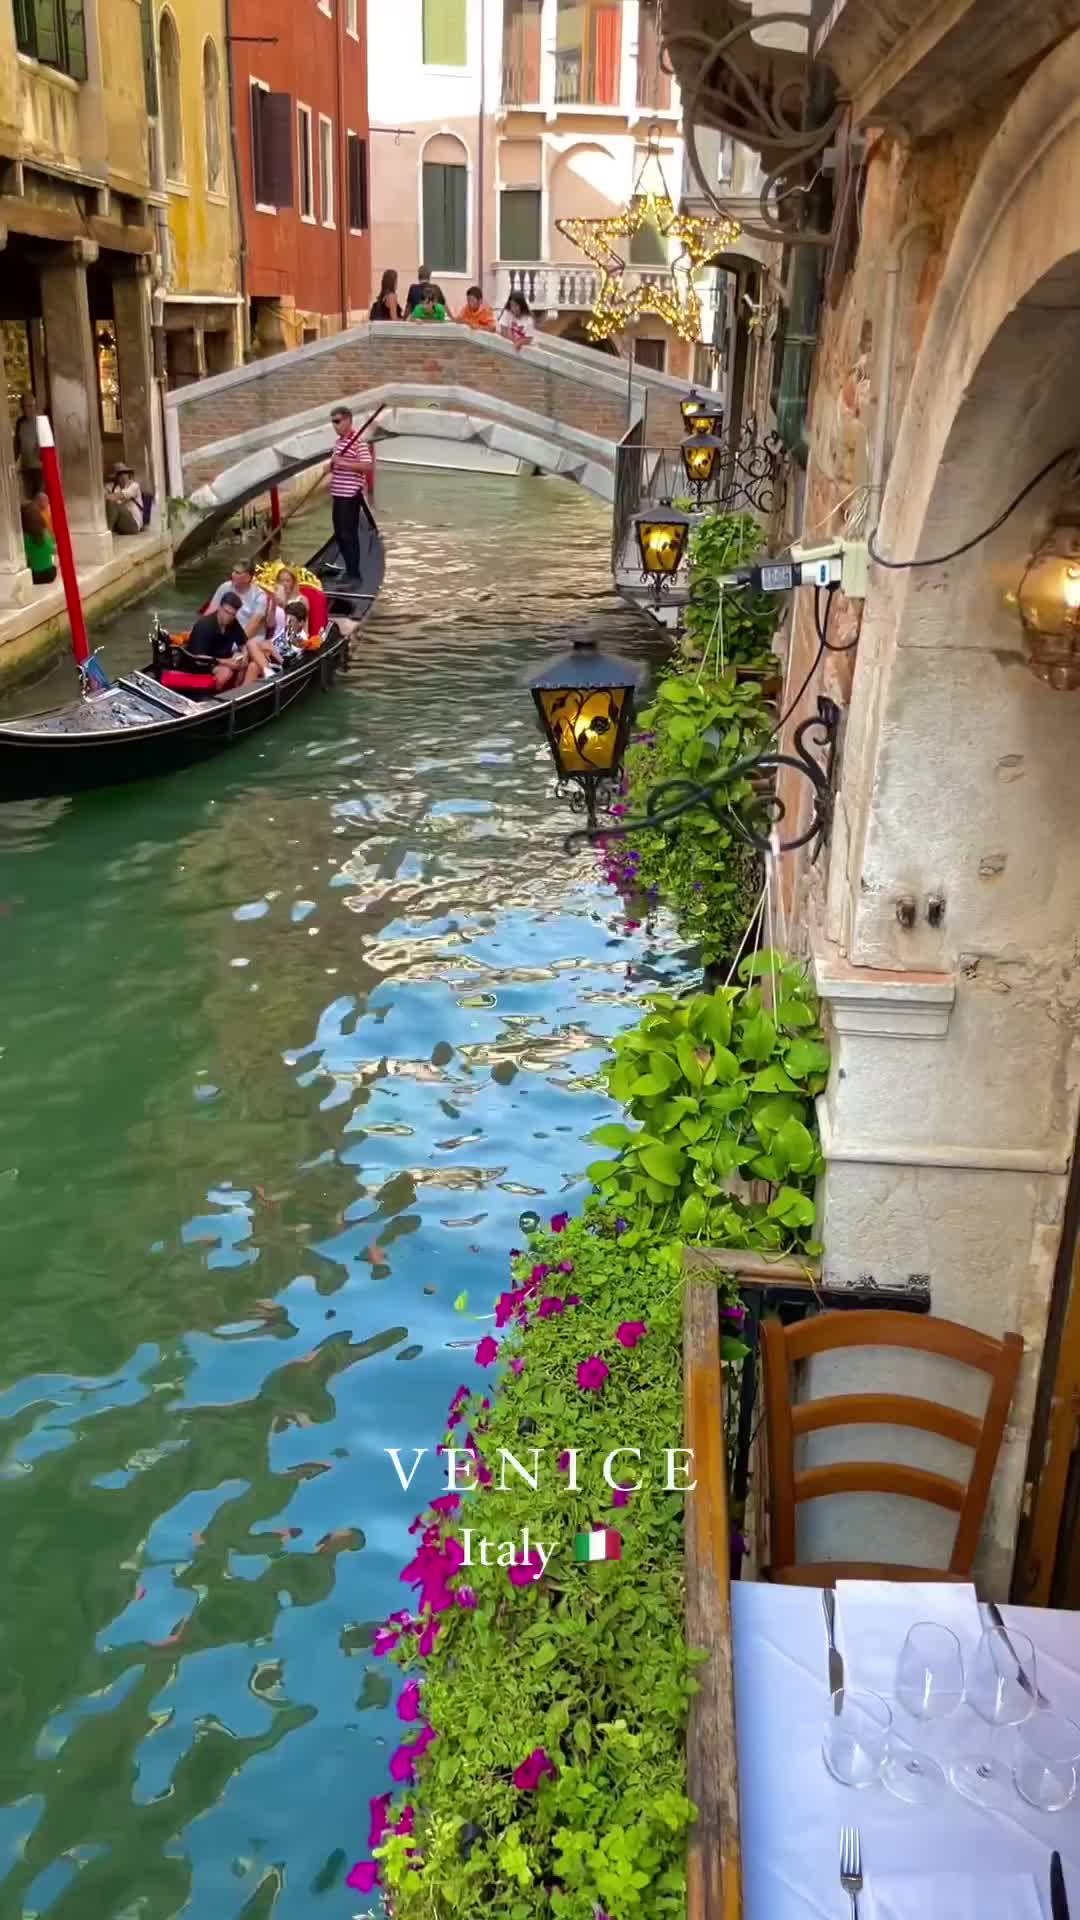 A Dream Day in Venice: Gondolas & Stunning Architecture